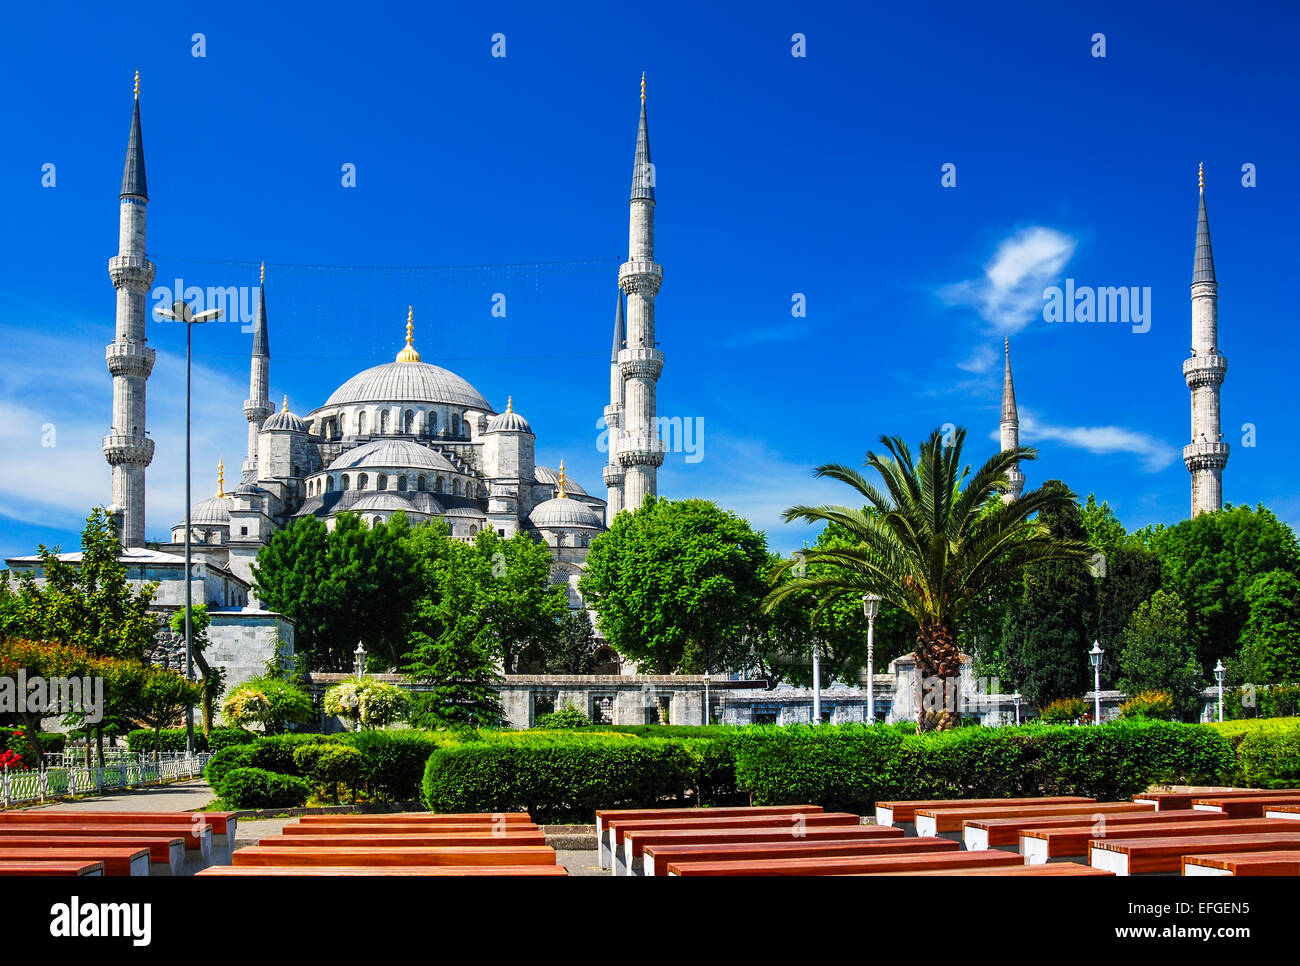 Estambul, Turquía. Sultan Ahmet Camii denominada Mezquita Azul hito islámico turco con seis minaretes, la principal atracción de la ciudad. Foto de stock